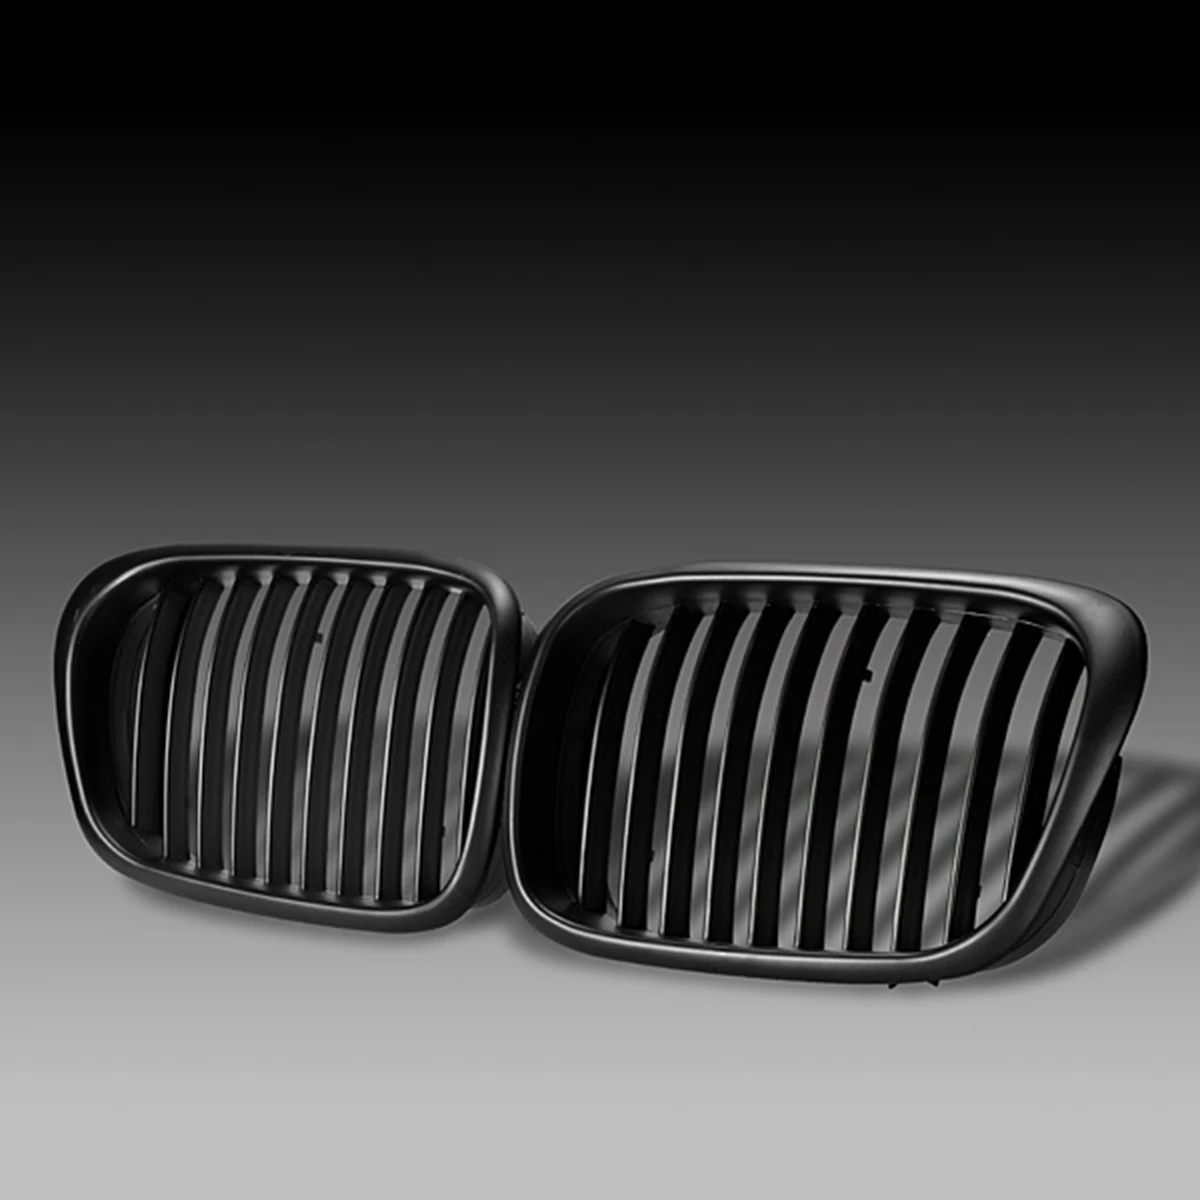 2 шт OEM стиль автомобиля Передняя Черная Широкая решетка решетки для BMW E39 5 серии 1997 1998 1999 2000 2001 2002 2003